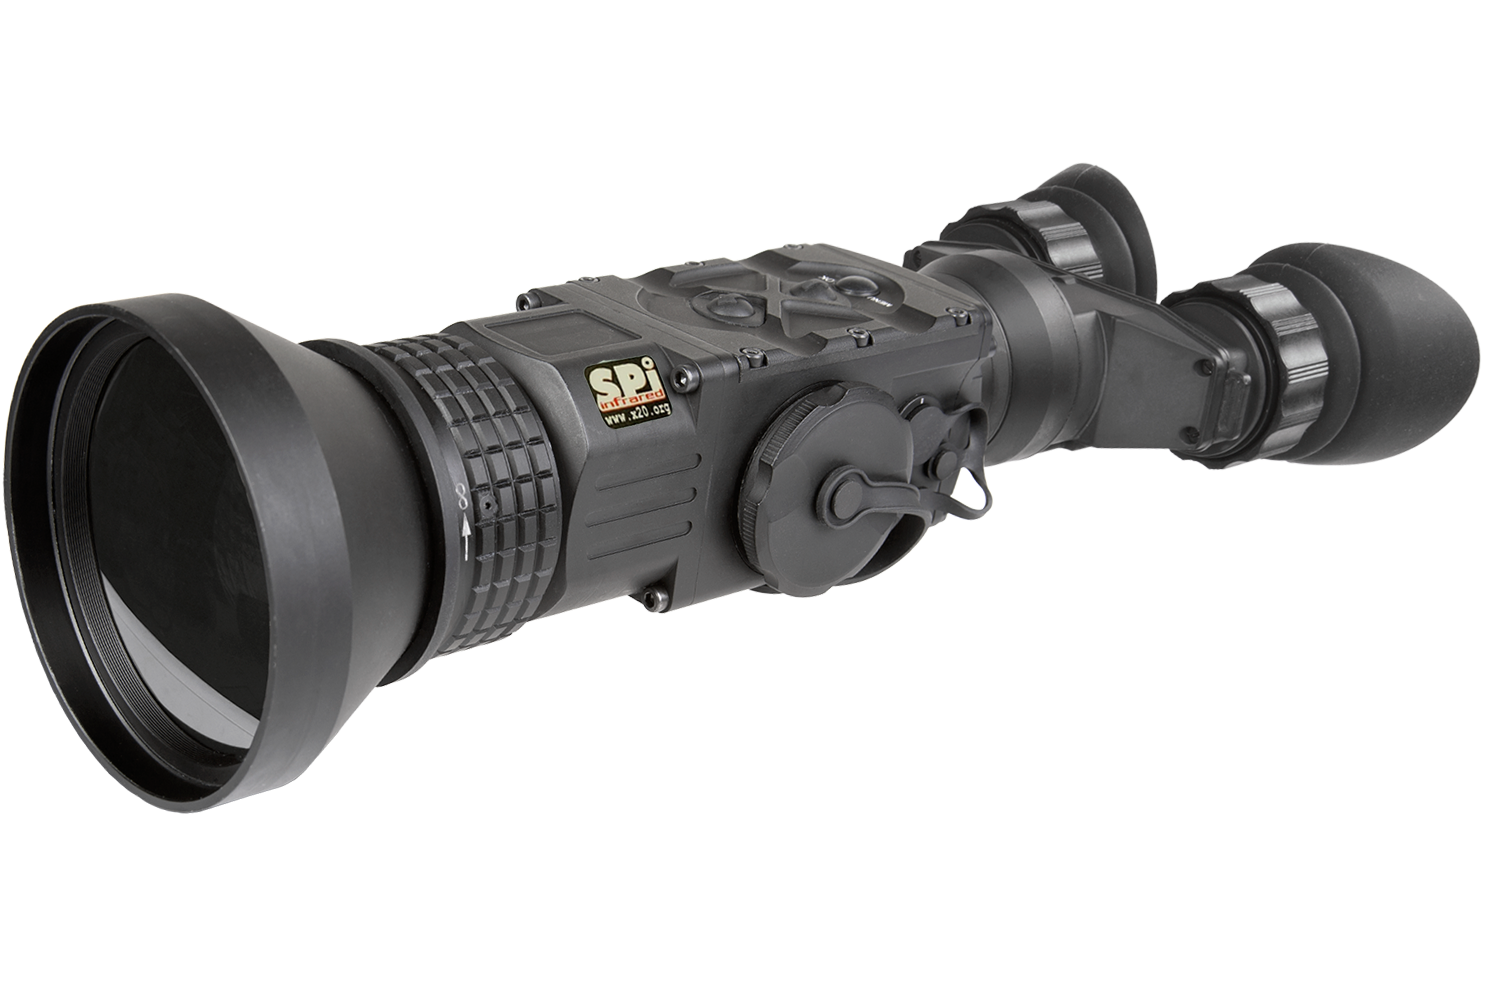 Thermal Imaging binocular military grade durable